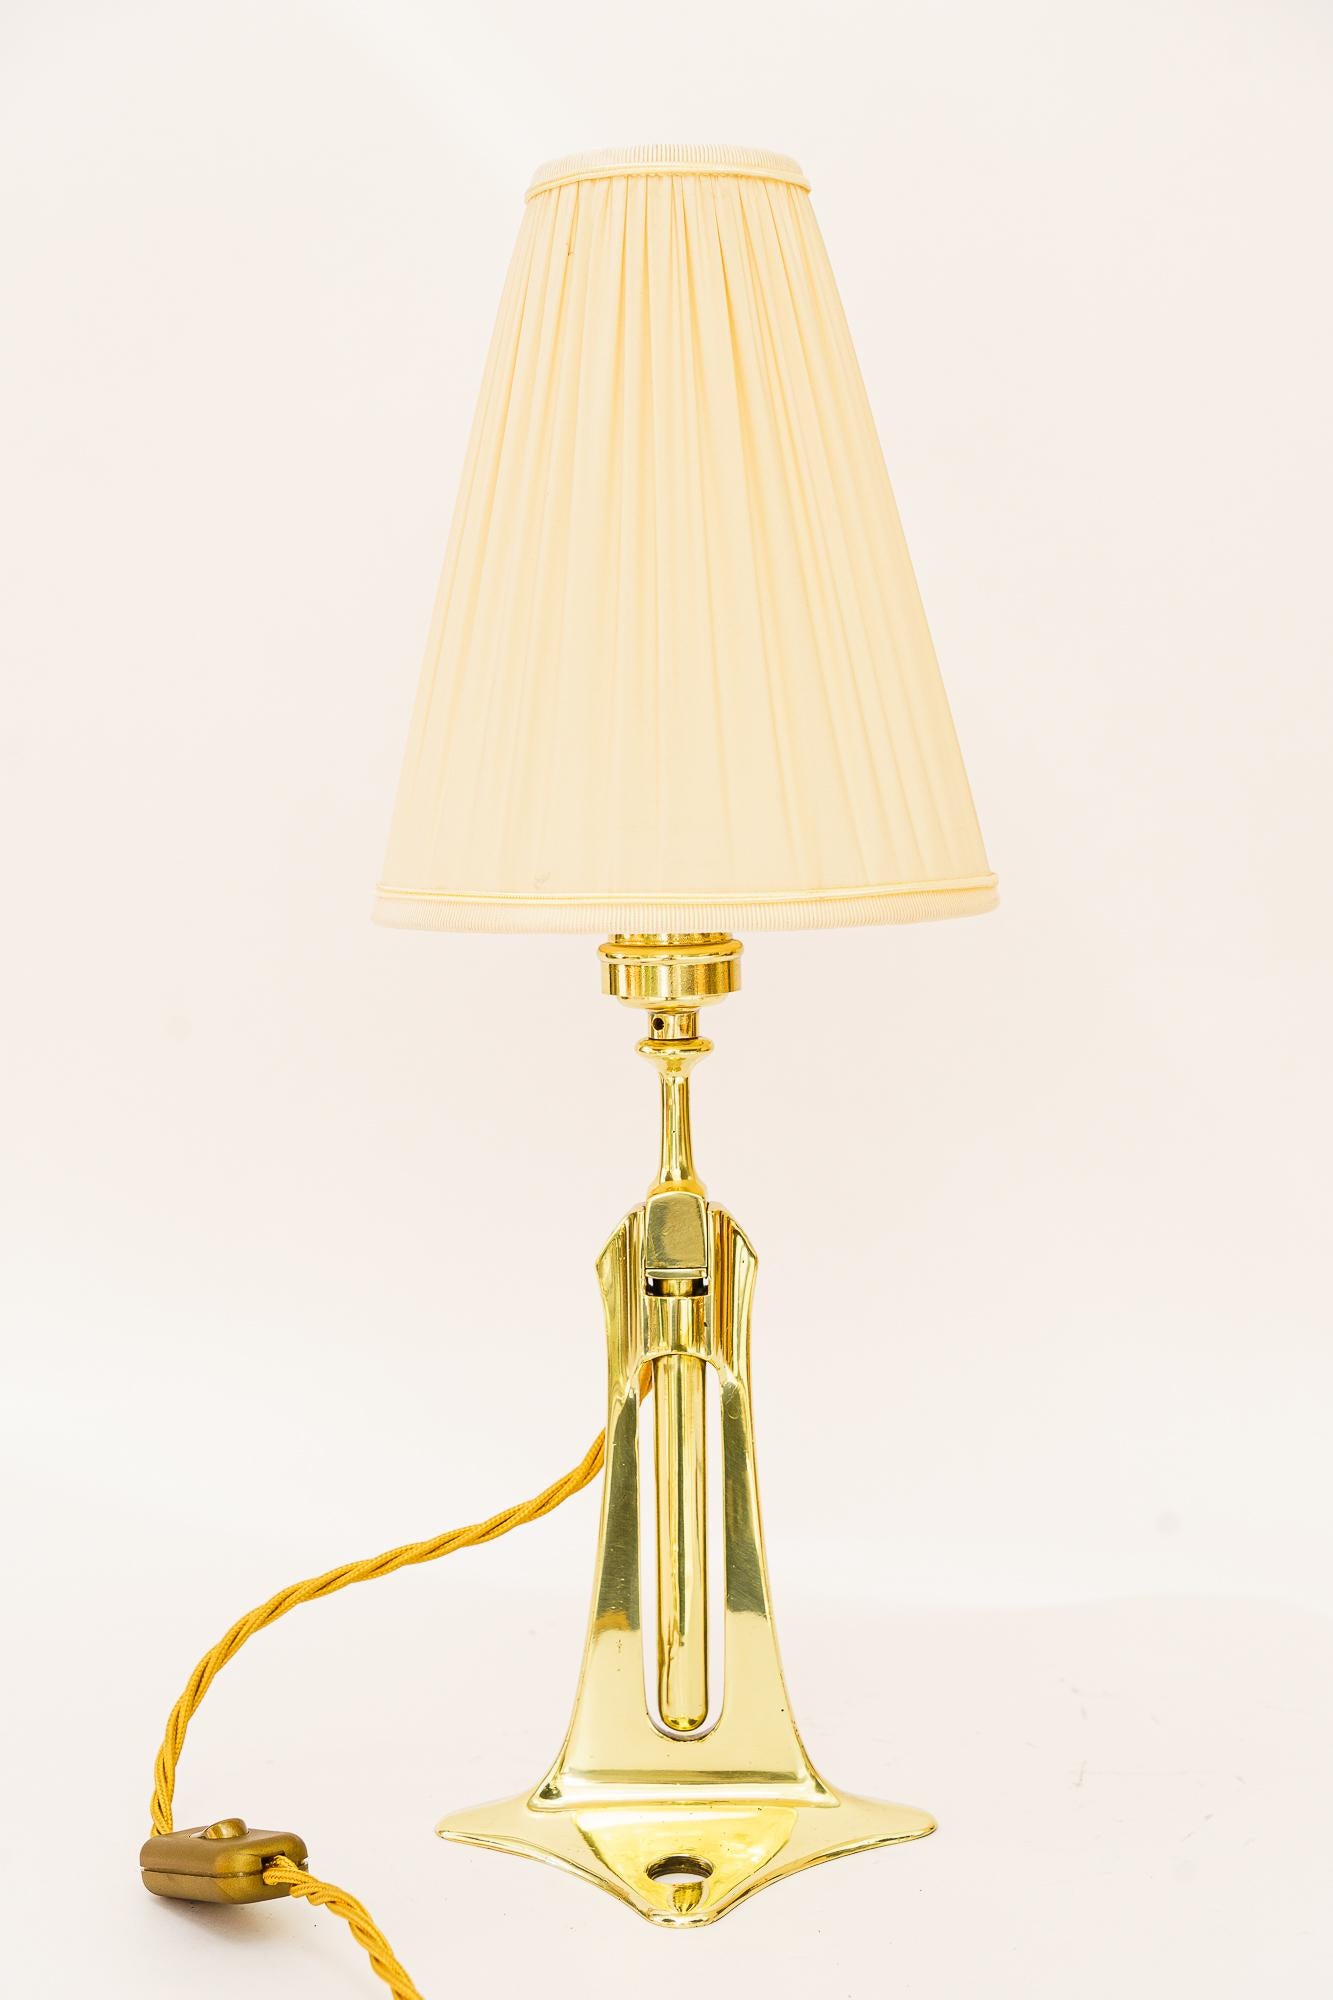 Art Deco Tisch- oder Wandlampe Wien um 1920er Jahre
Poliert und emailliert
Der Stoff wird ersetzt ( neu )
Tischlampe: H: 46cm Durchmesser: 16cm    
Wandleuchte:  H: 34cm B: 17cm T: 27cm